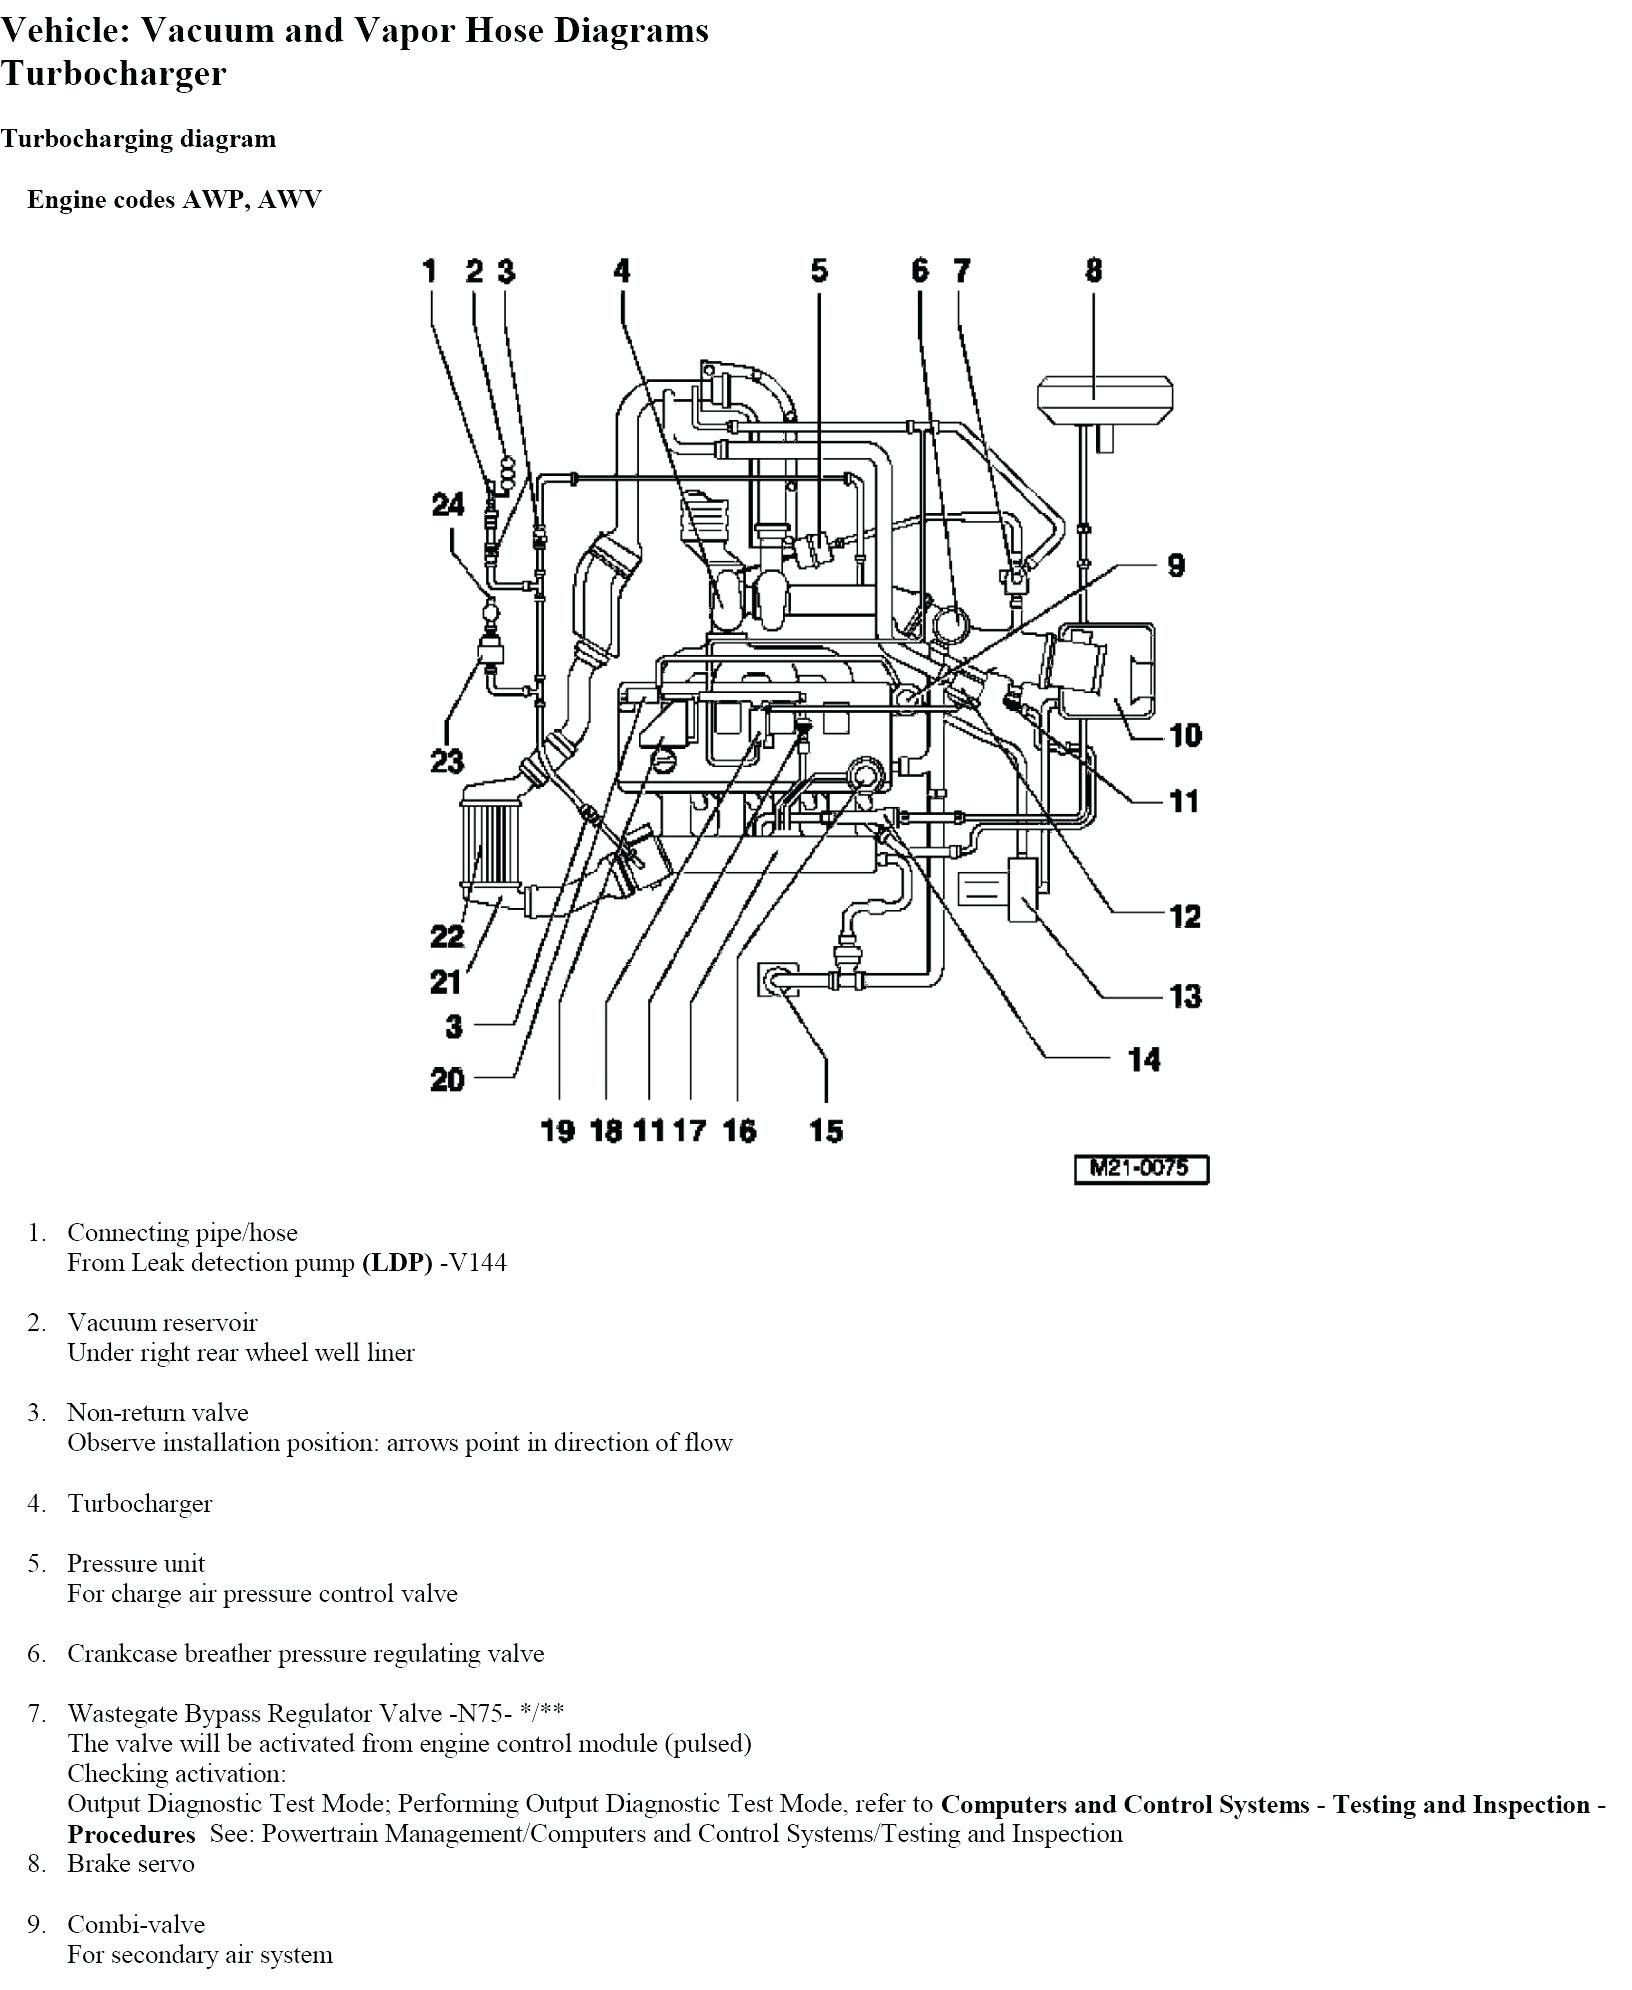 Car Brake Parts Diagram Car Diagram Parts A Car Wheel Diagram Parts A Car Wheel Of Car Brake Parts Diagram